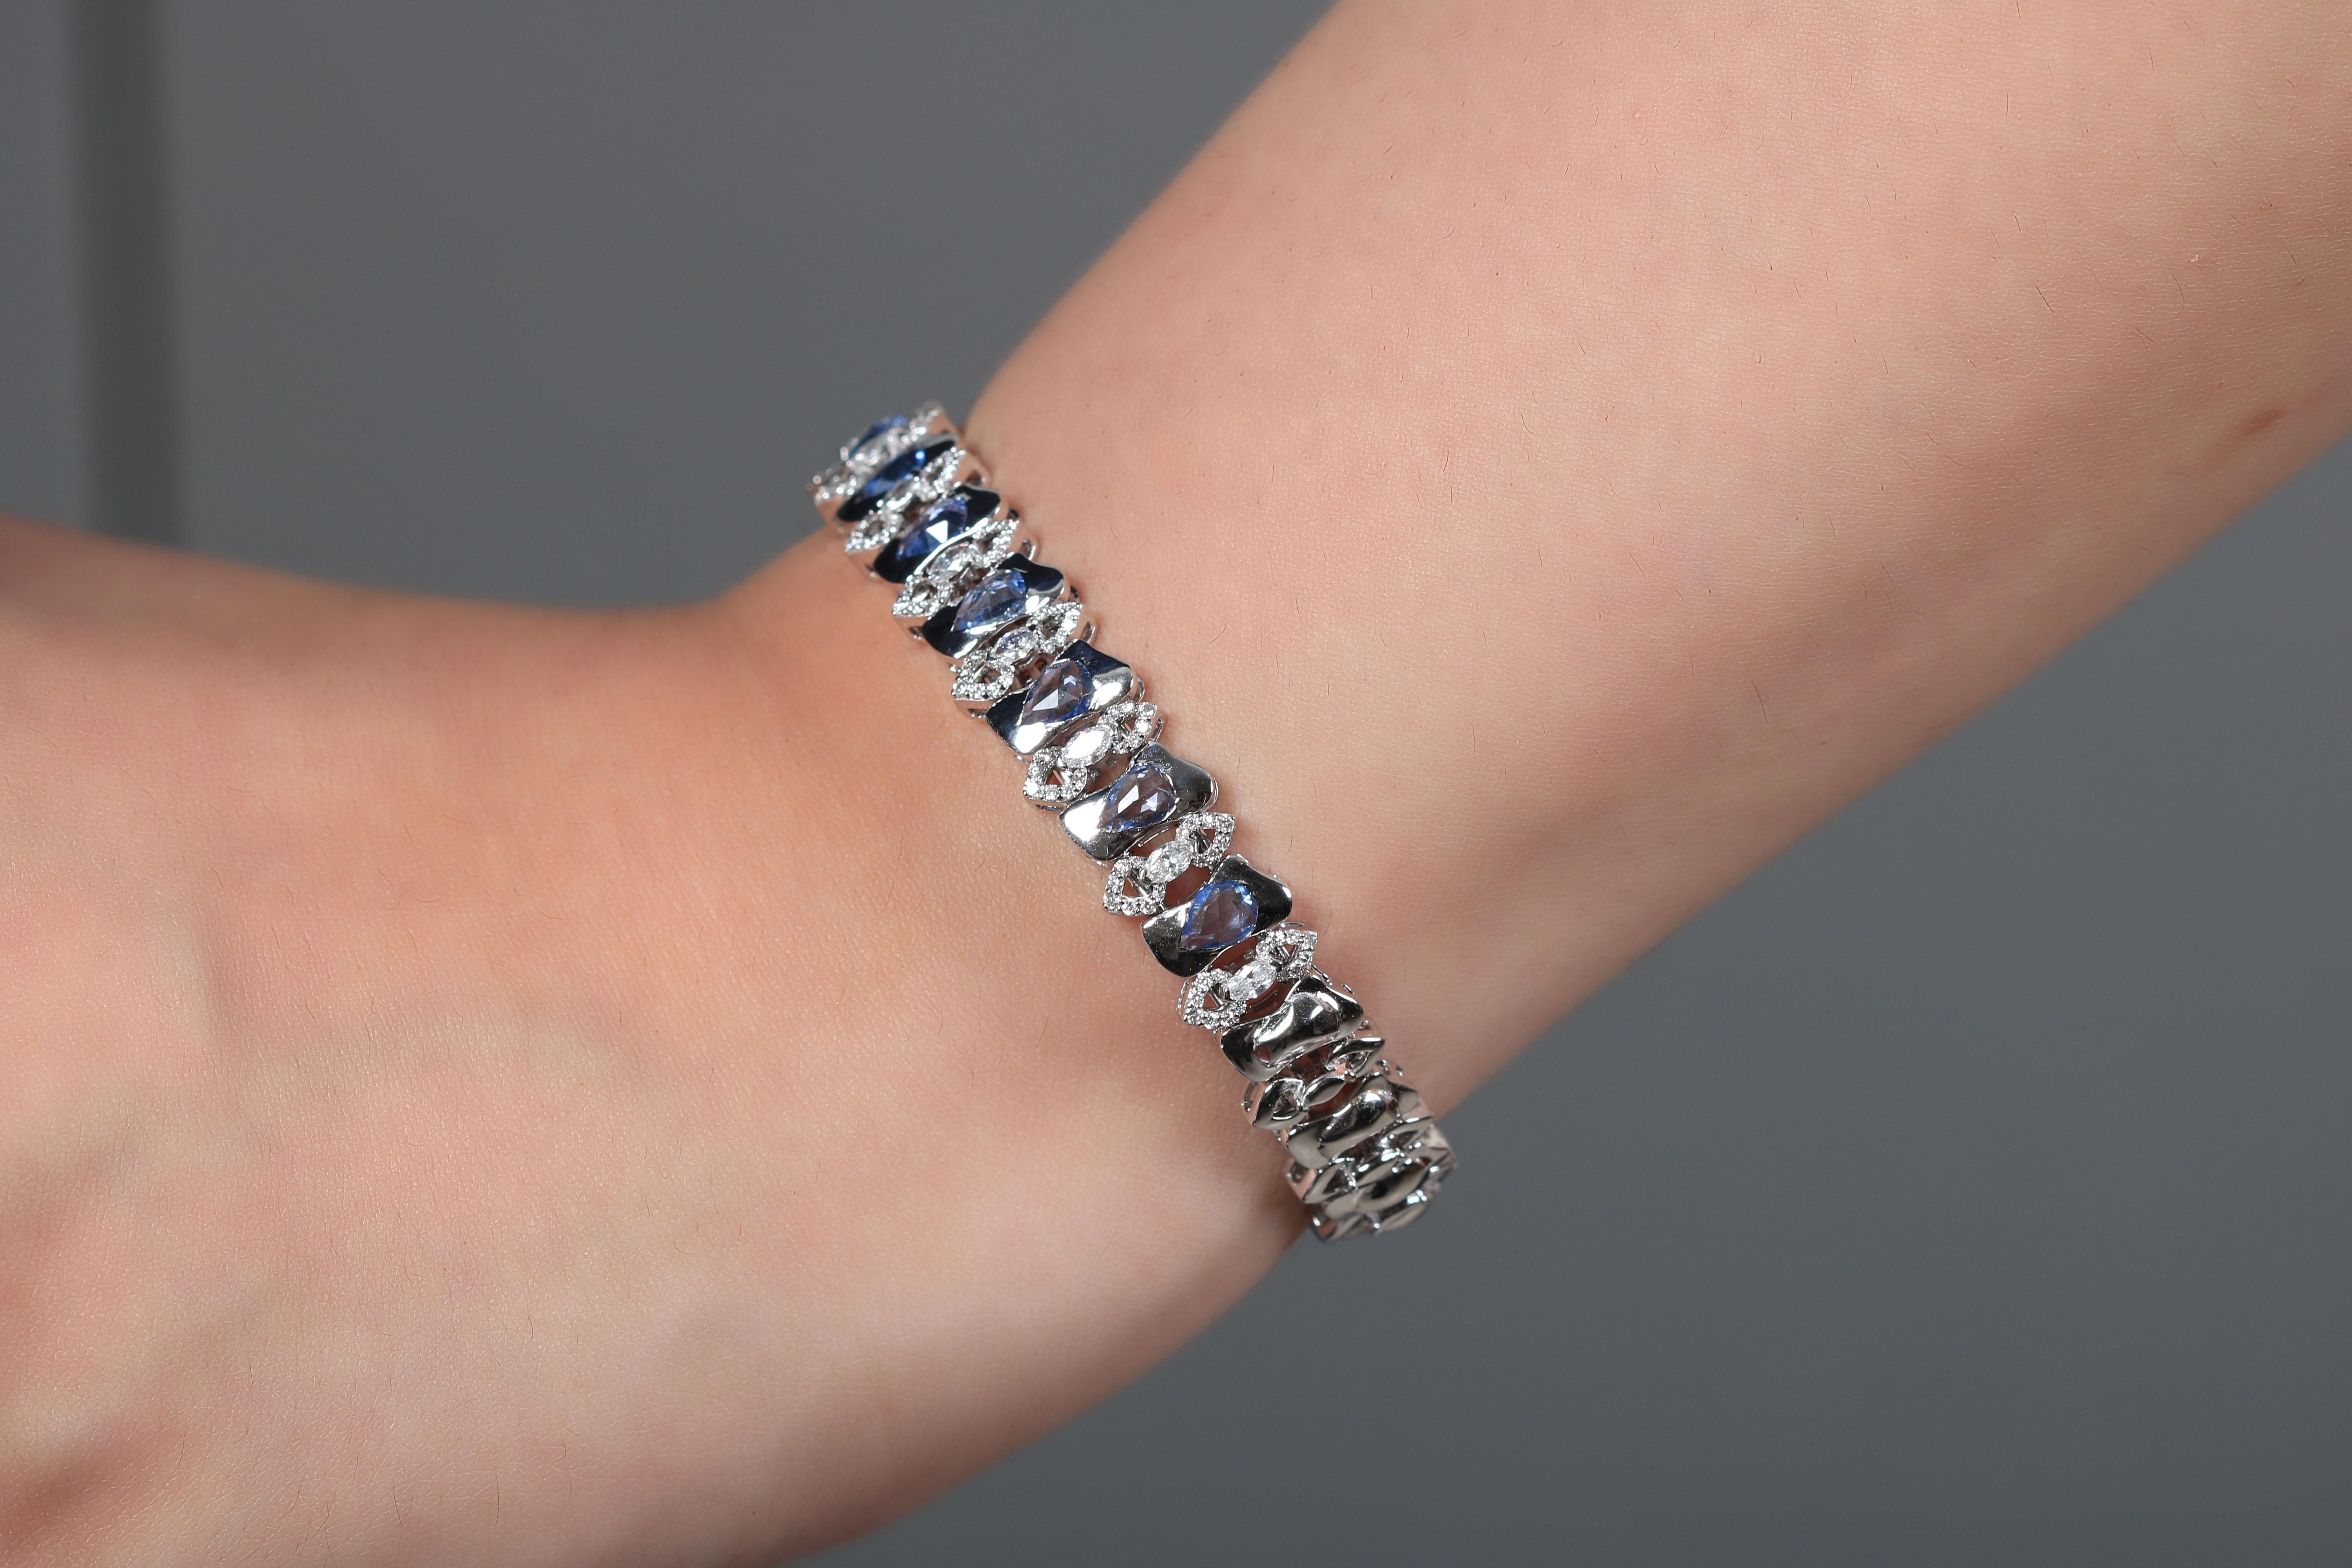 Dieses schlichte, aber hochexklusive Arabesque-Armband aus blauem Saphir ist charmant und prächtig und verkörpert die Essenz des wahren Luxus. Bemerkenswert sind die blauen Saphirsteine, die von einem Medley feiner Diamanten umgeben sind. Das